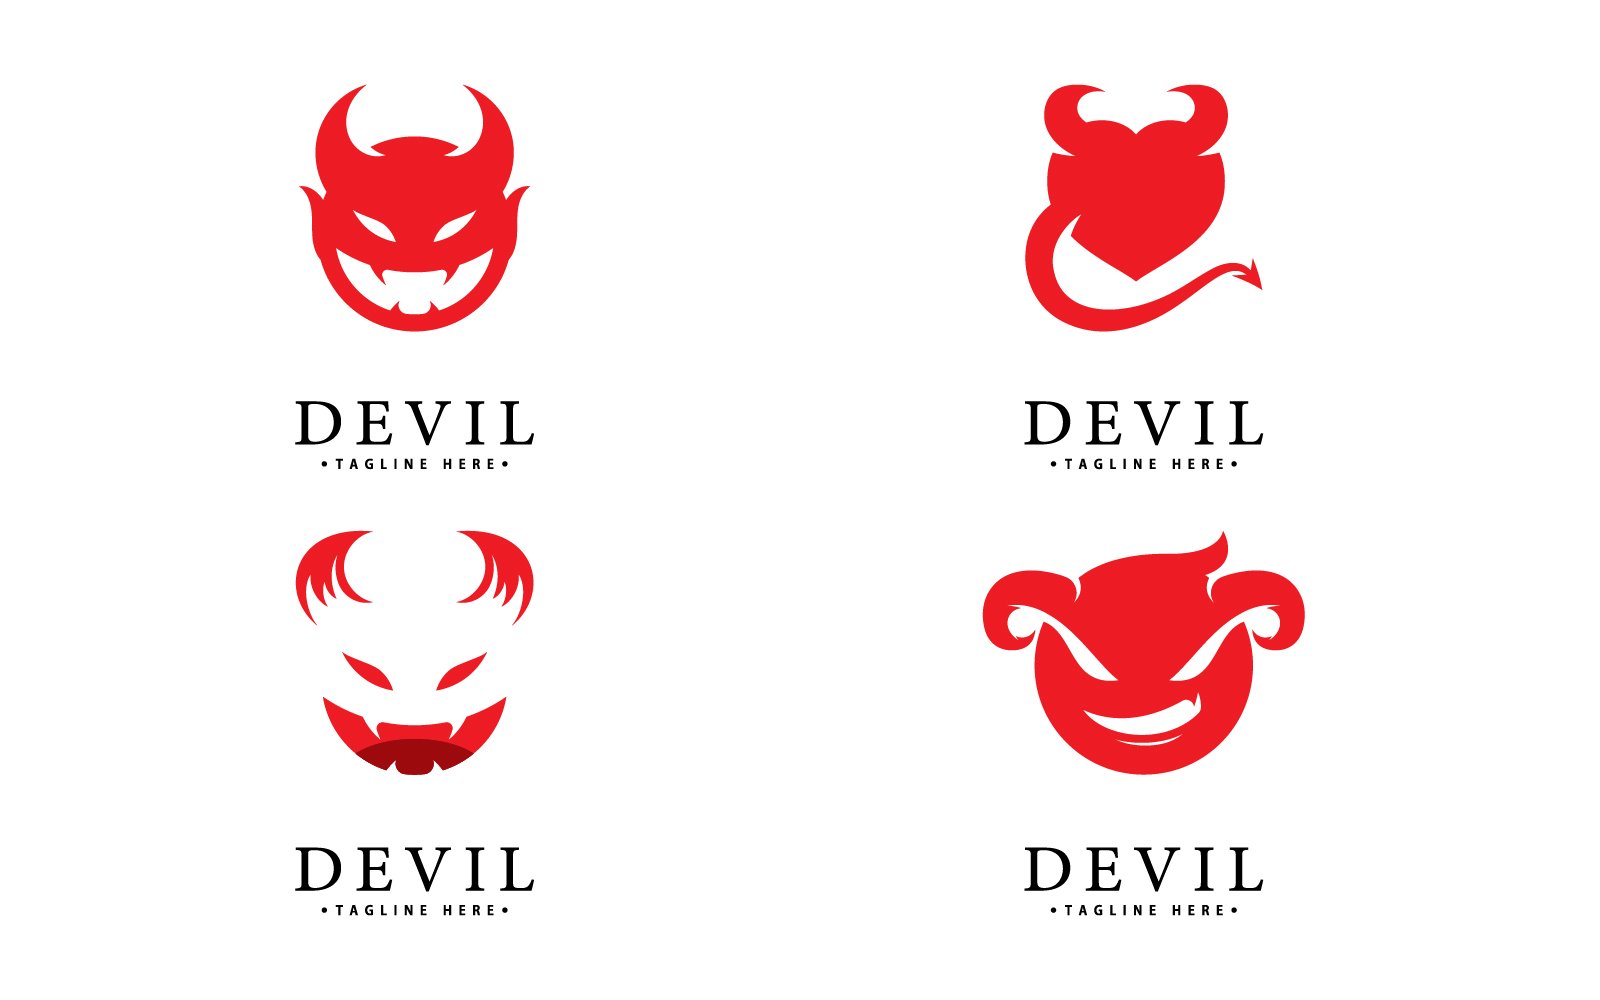 Kit Graphique #417369 Devil Illustration Divers Modles Web - Logo template Preview